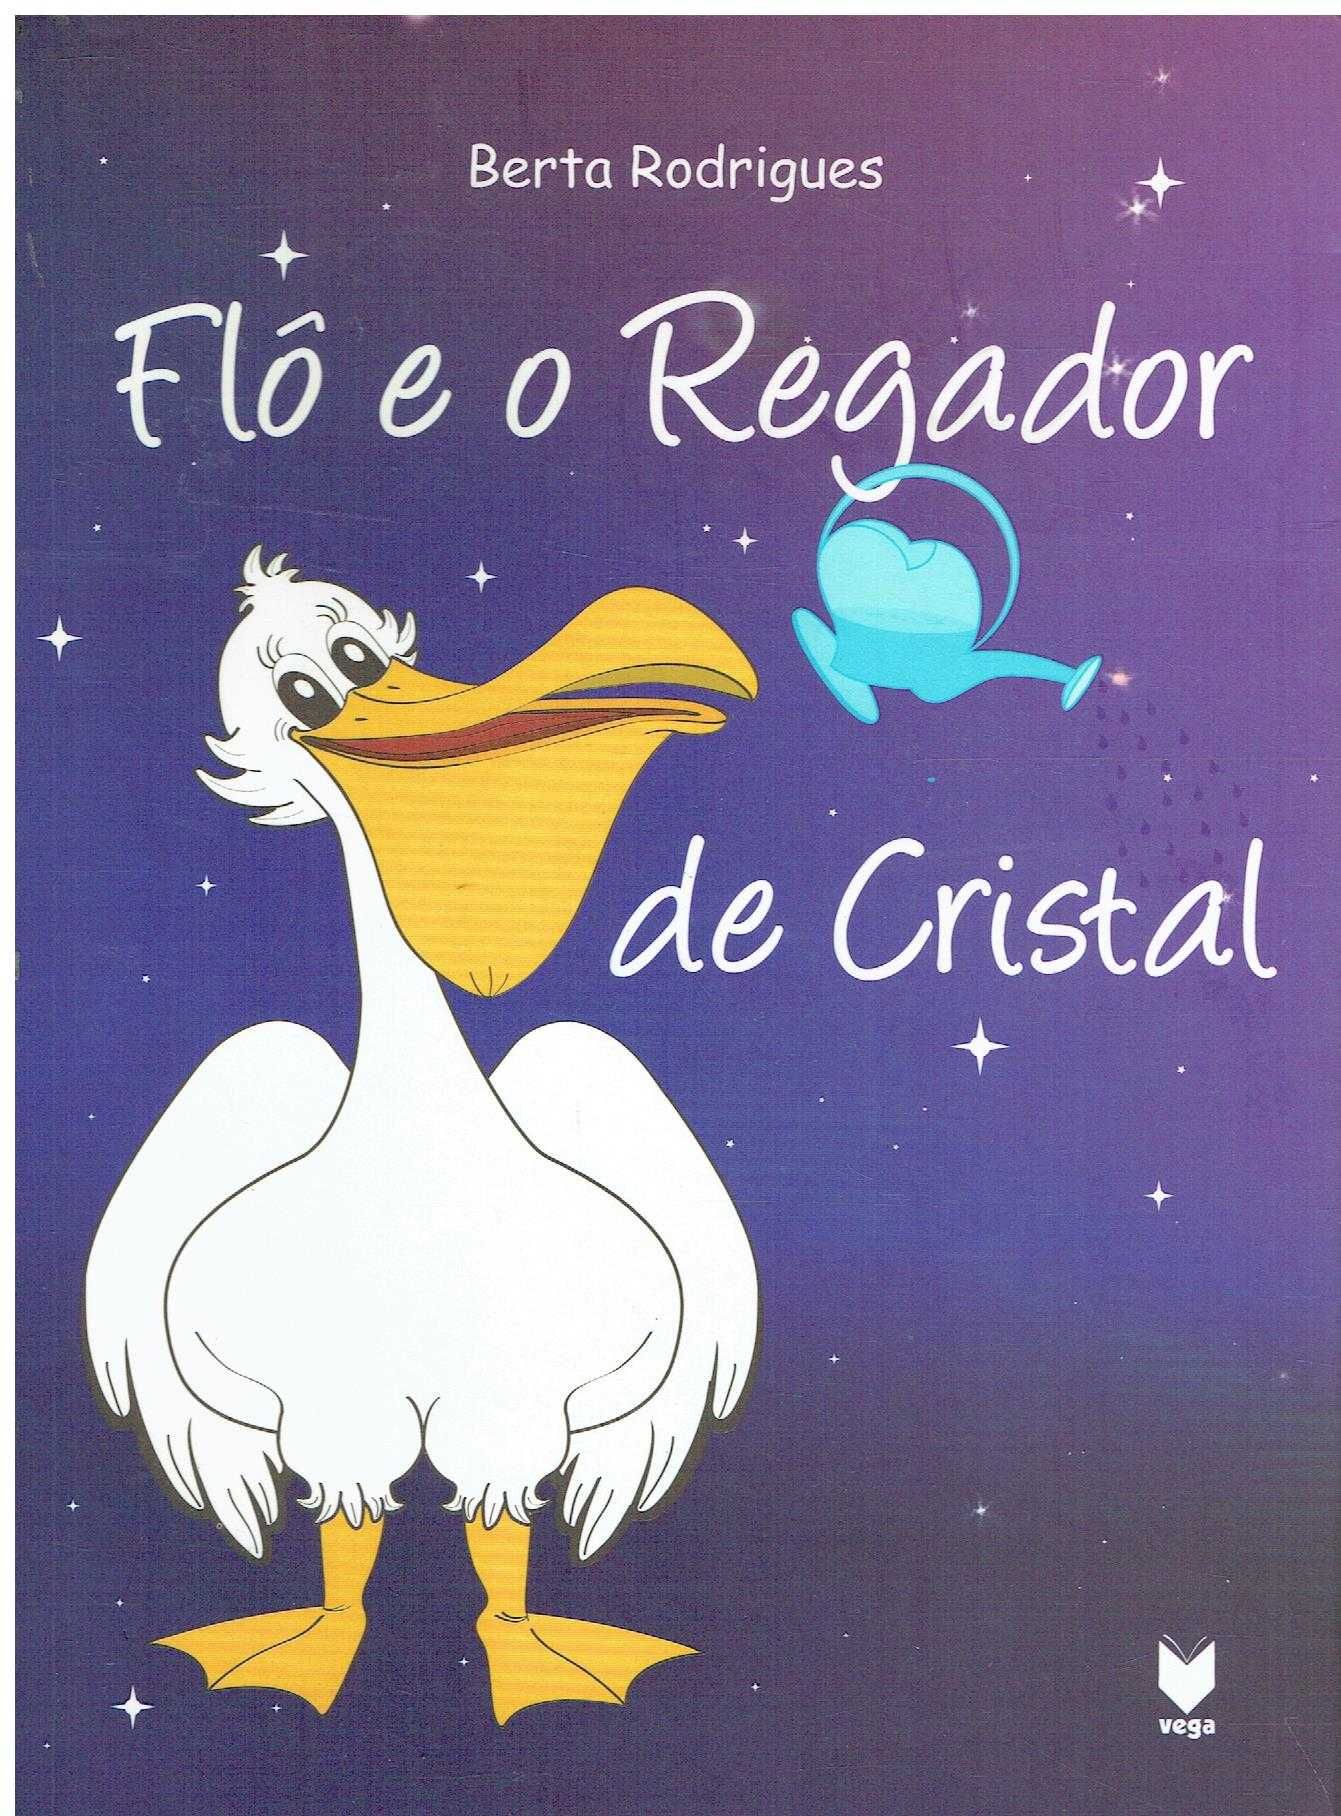 13901

Flô e o Regador de Cristal
de Berta Rodrigues